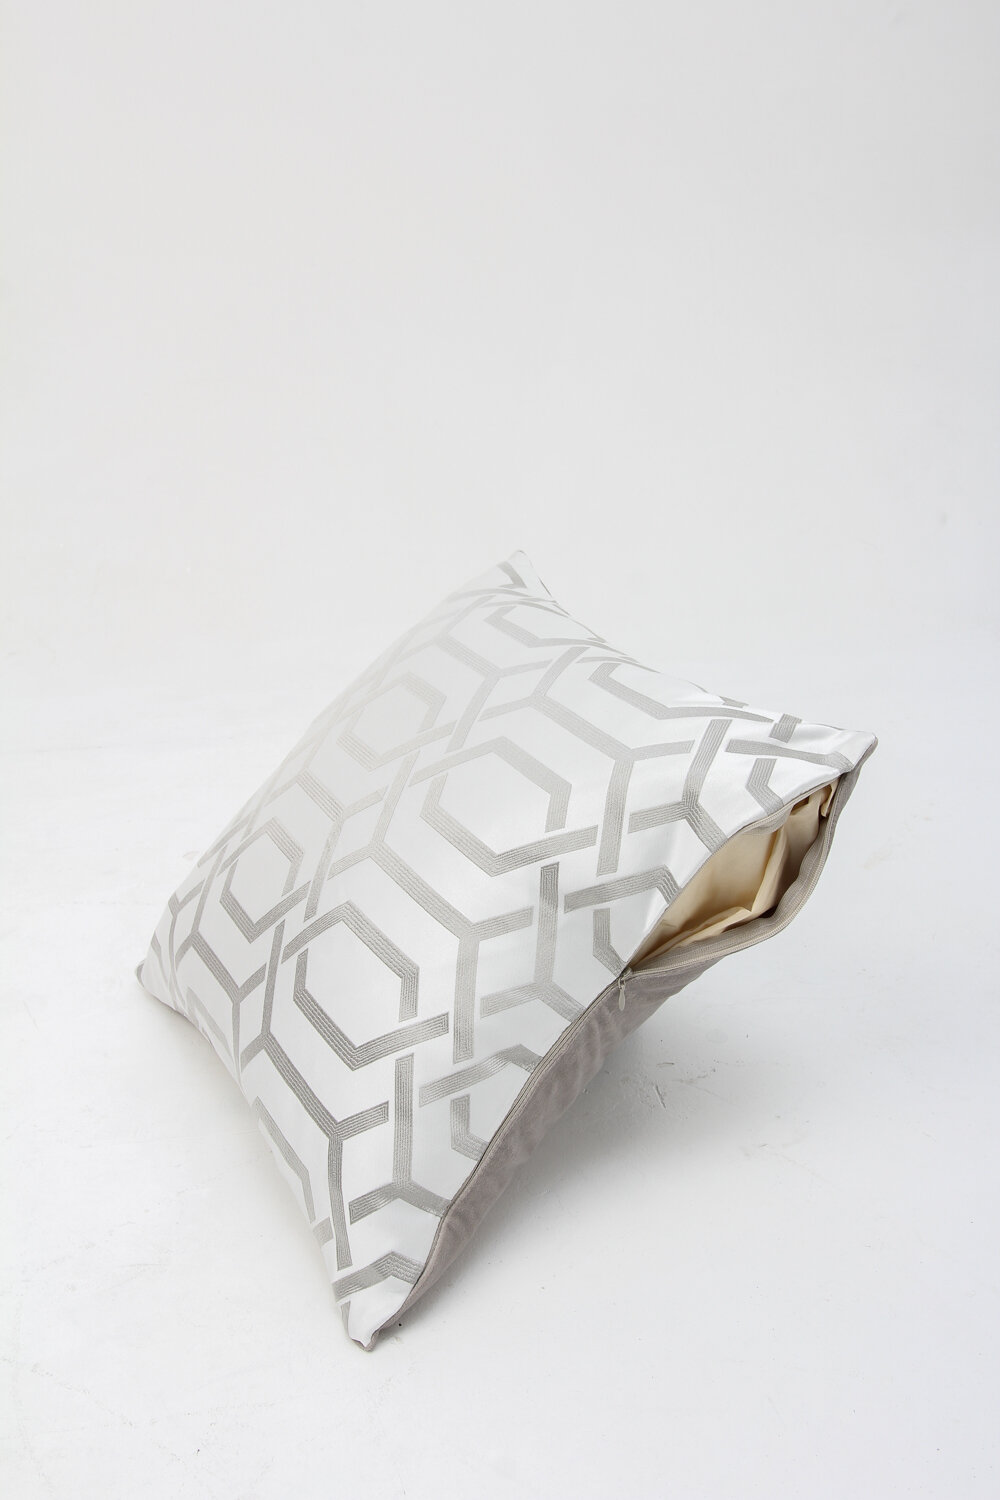 Подушка дизайнерская двусторонняя с контрастным геометрическим узором, цвет серебристый, перламутровый, серебристо-серый, светло-серый